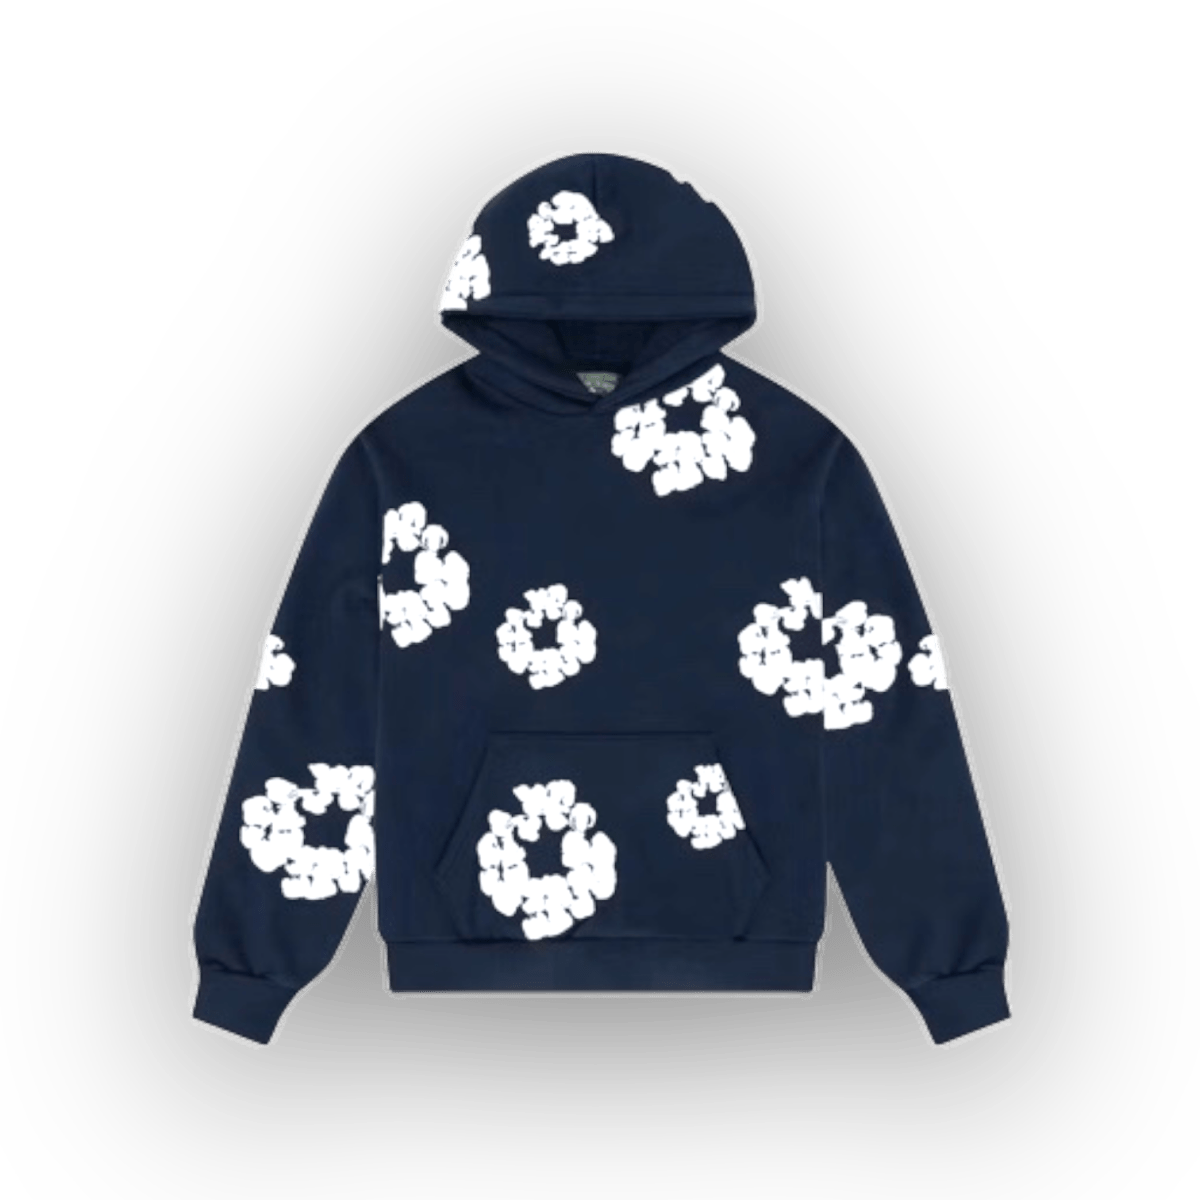 Denim Tears Cotton Wreath Sweatshirt Navy - Clothing - Jawns on Fire Sneakers & Streetwear